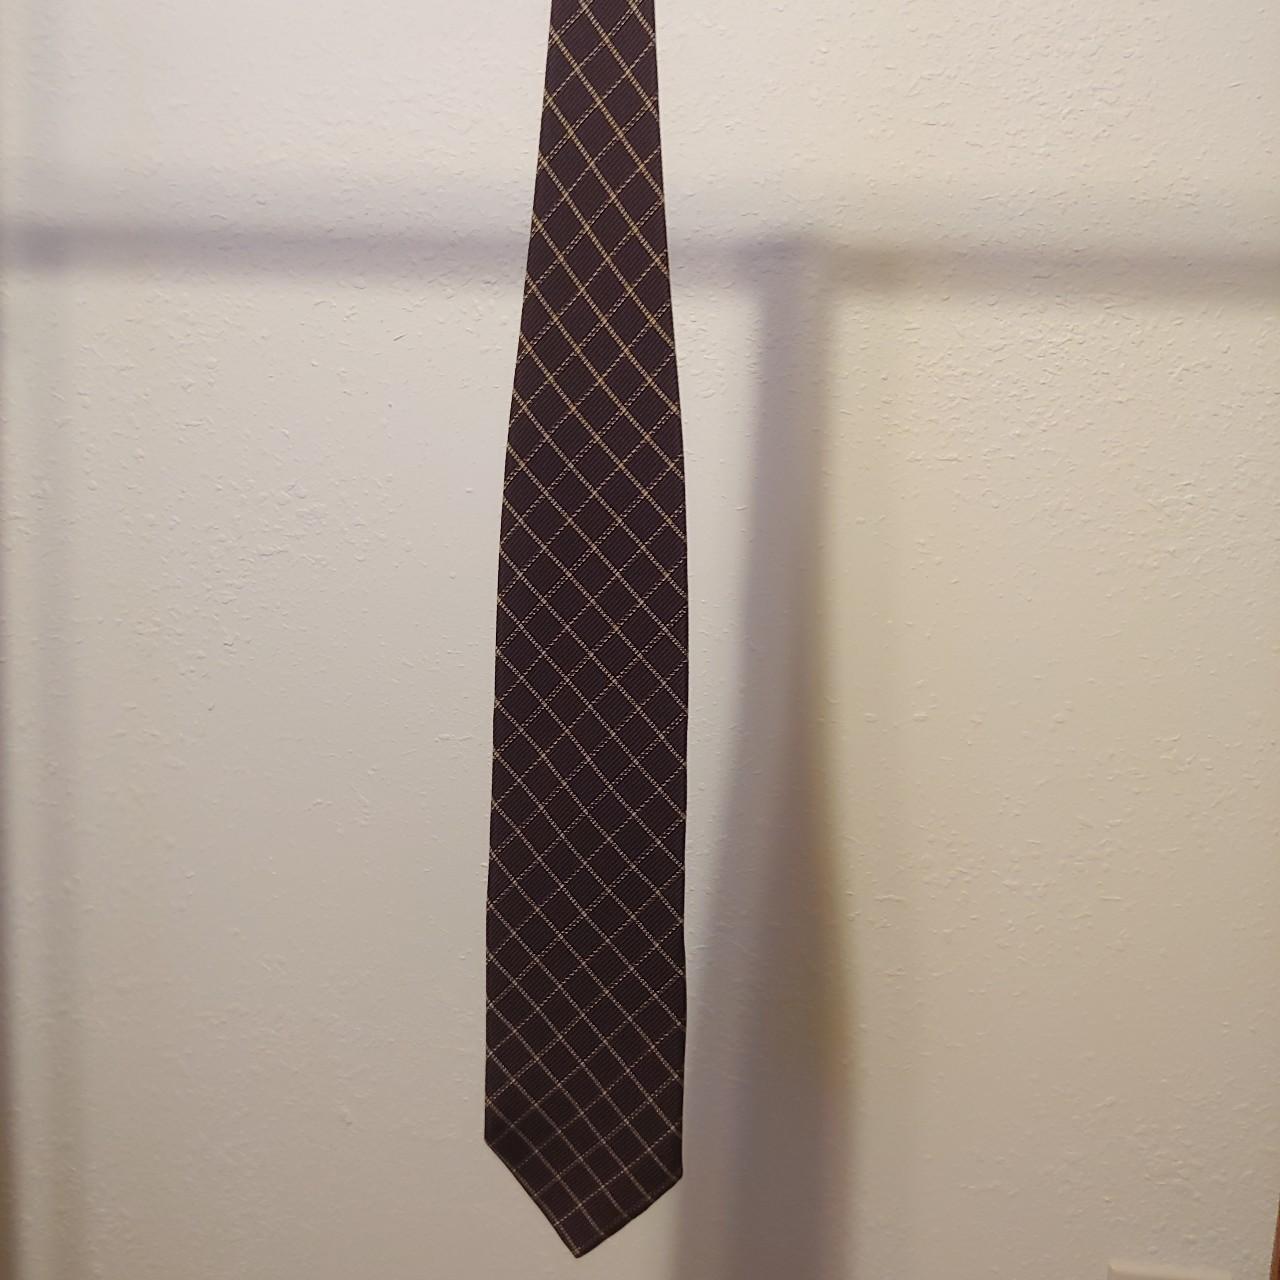 Vintage Giorgio Armani neck tie (cravatte). Wide... - Depop